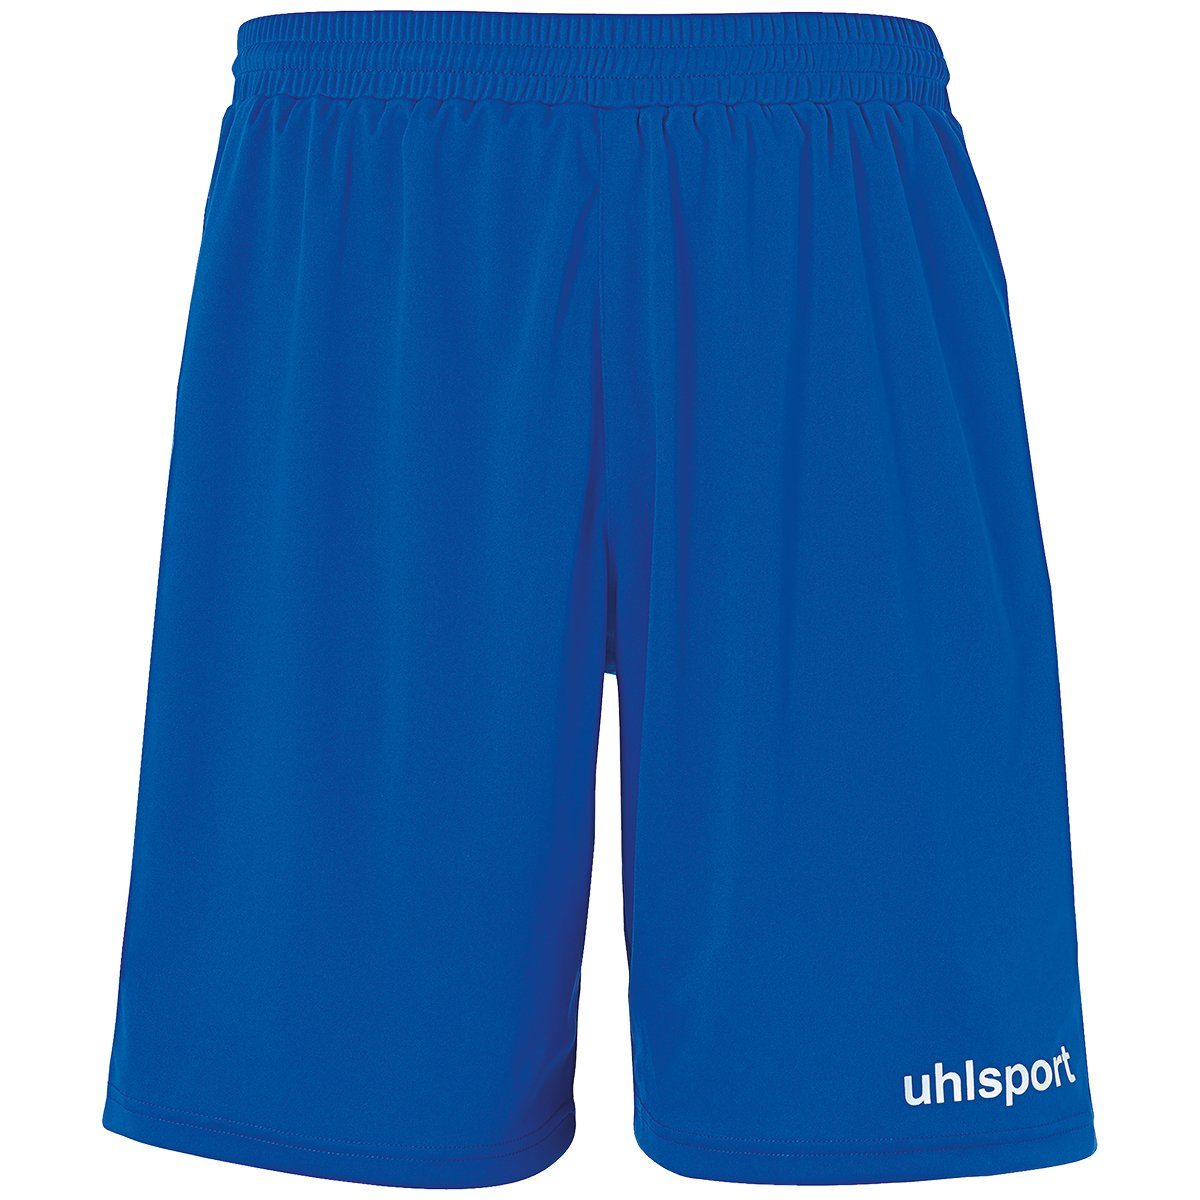 azurblau/weiß PERFORMANCE SHORTS uhlsport Shorts uhlsport Shorts